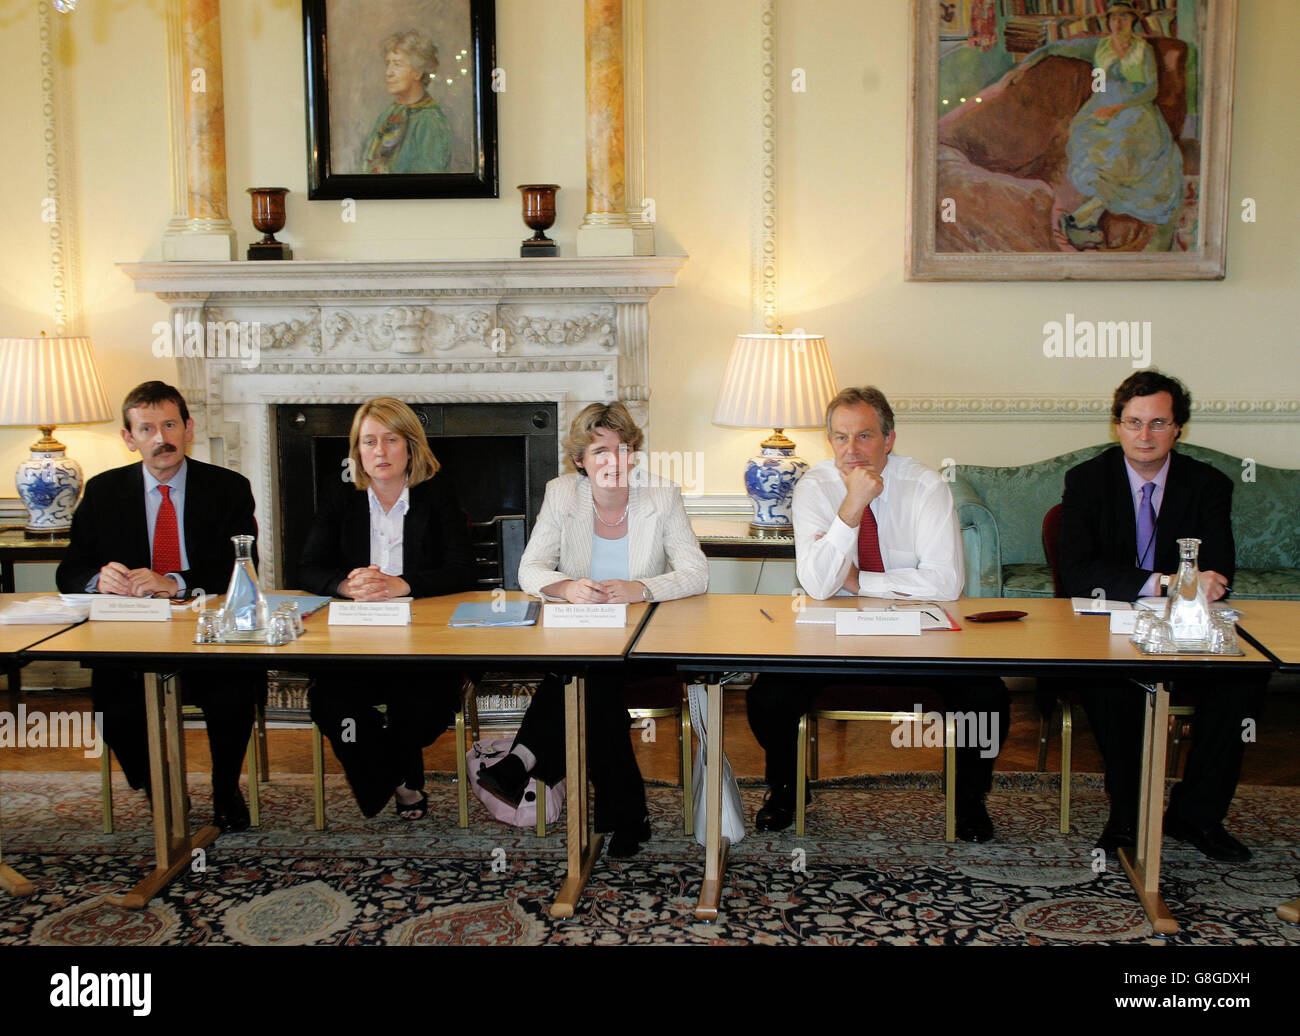 Le premier ministre britannique Tony Blair (deuxième, à droite) et la secrétaire d'État à l'éducation et aux compétences Ruth Kelly (C) tiennent une réunion avec un groupe d'enseignants chefs dans le cadre du groupe de fer de lance de la discipline scolaire et du comportement. Banque D'Images